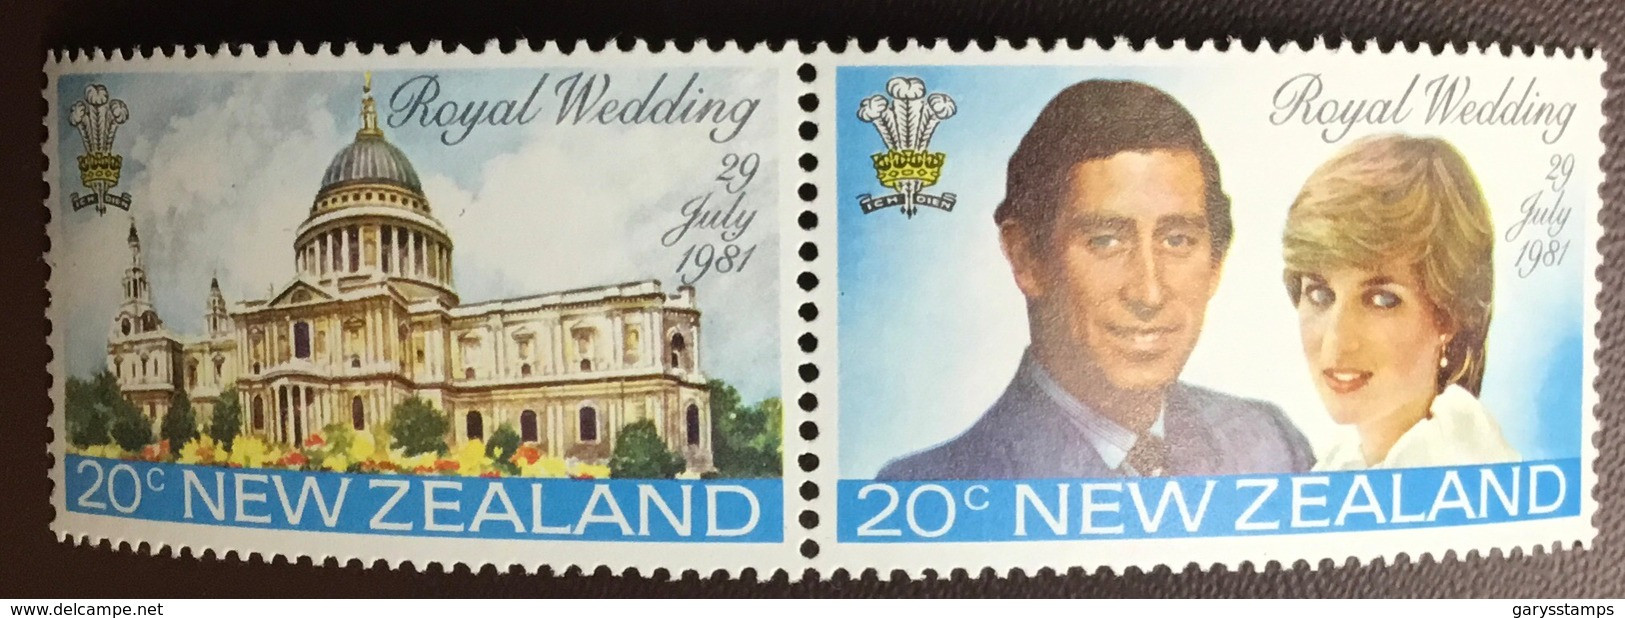 New Zealand 1981 Royal Wedding MNH - Ongebruikt